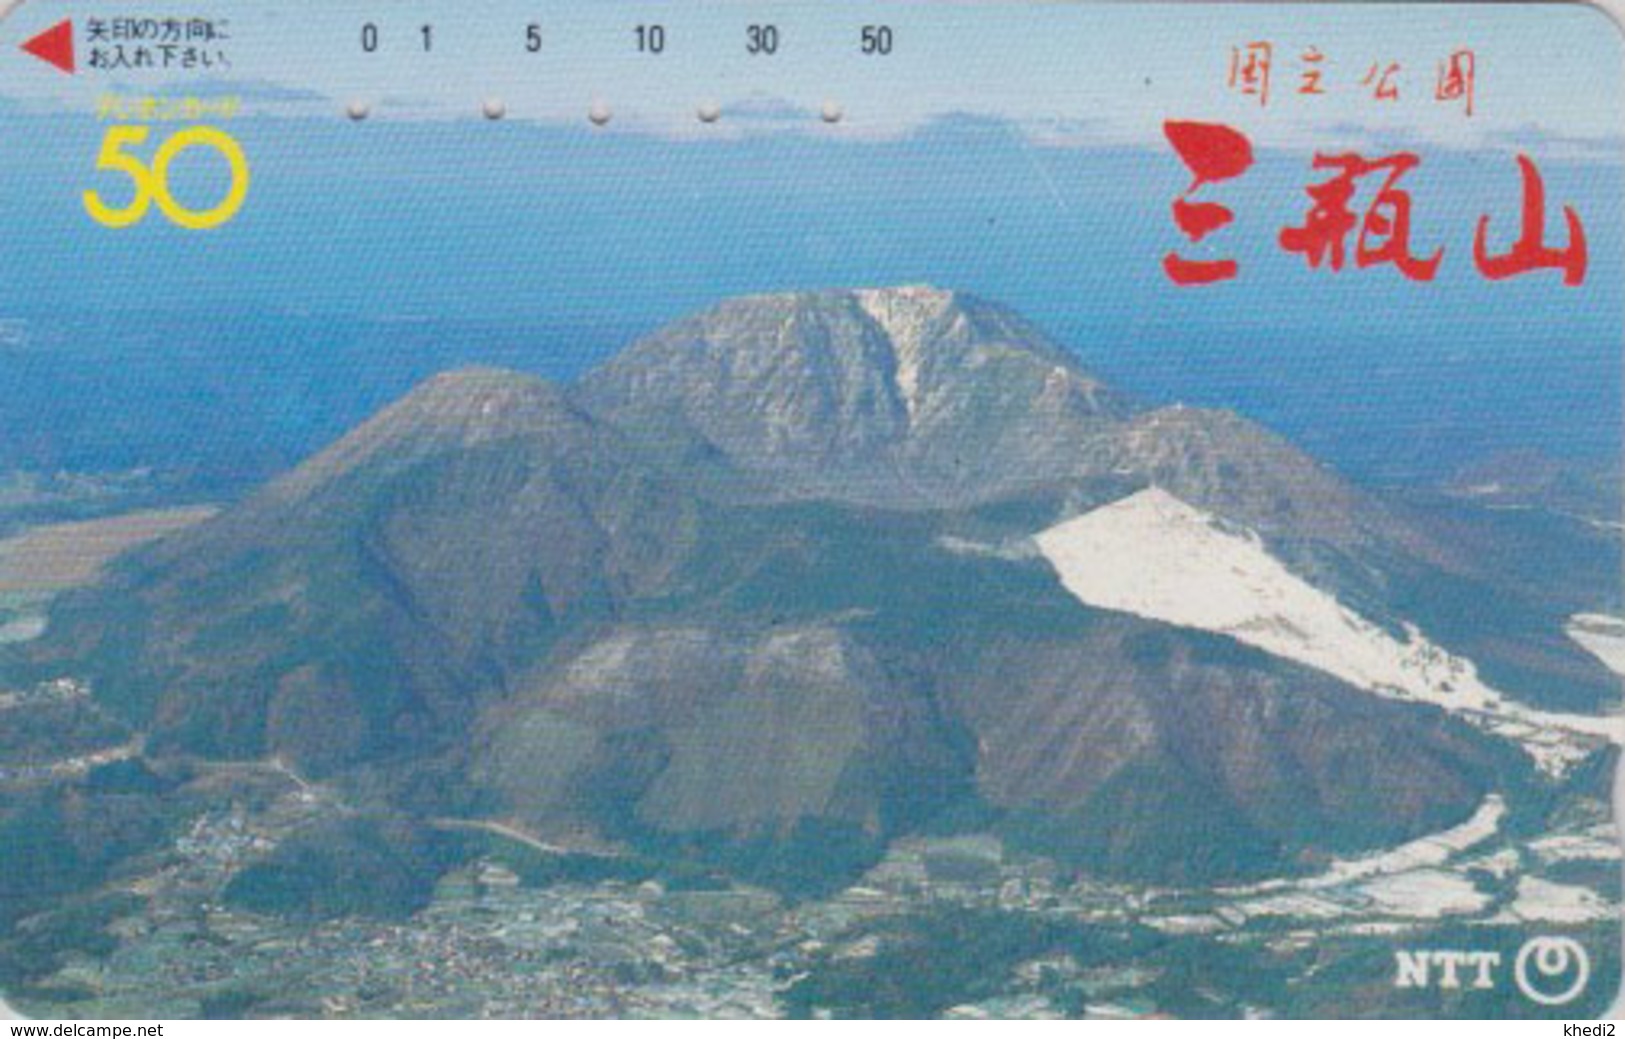 Télécarte JAPON / NTT 350-054 - Cratère De VOLCAN TBE - VULCAN - JAPAN Phonecard - VOLCANO - Vulcani